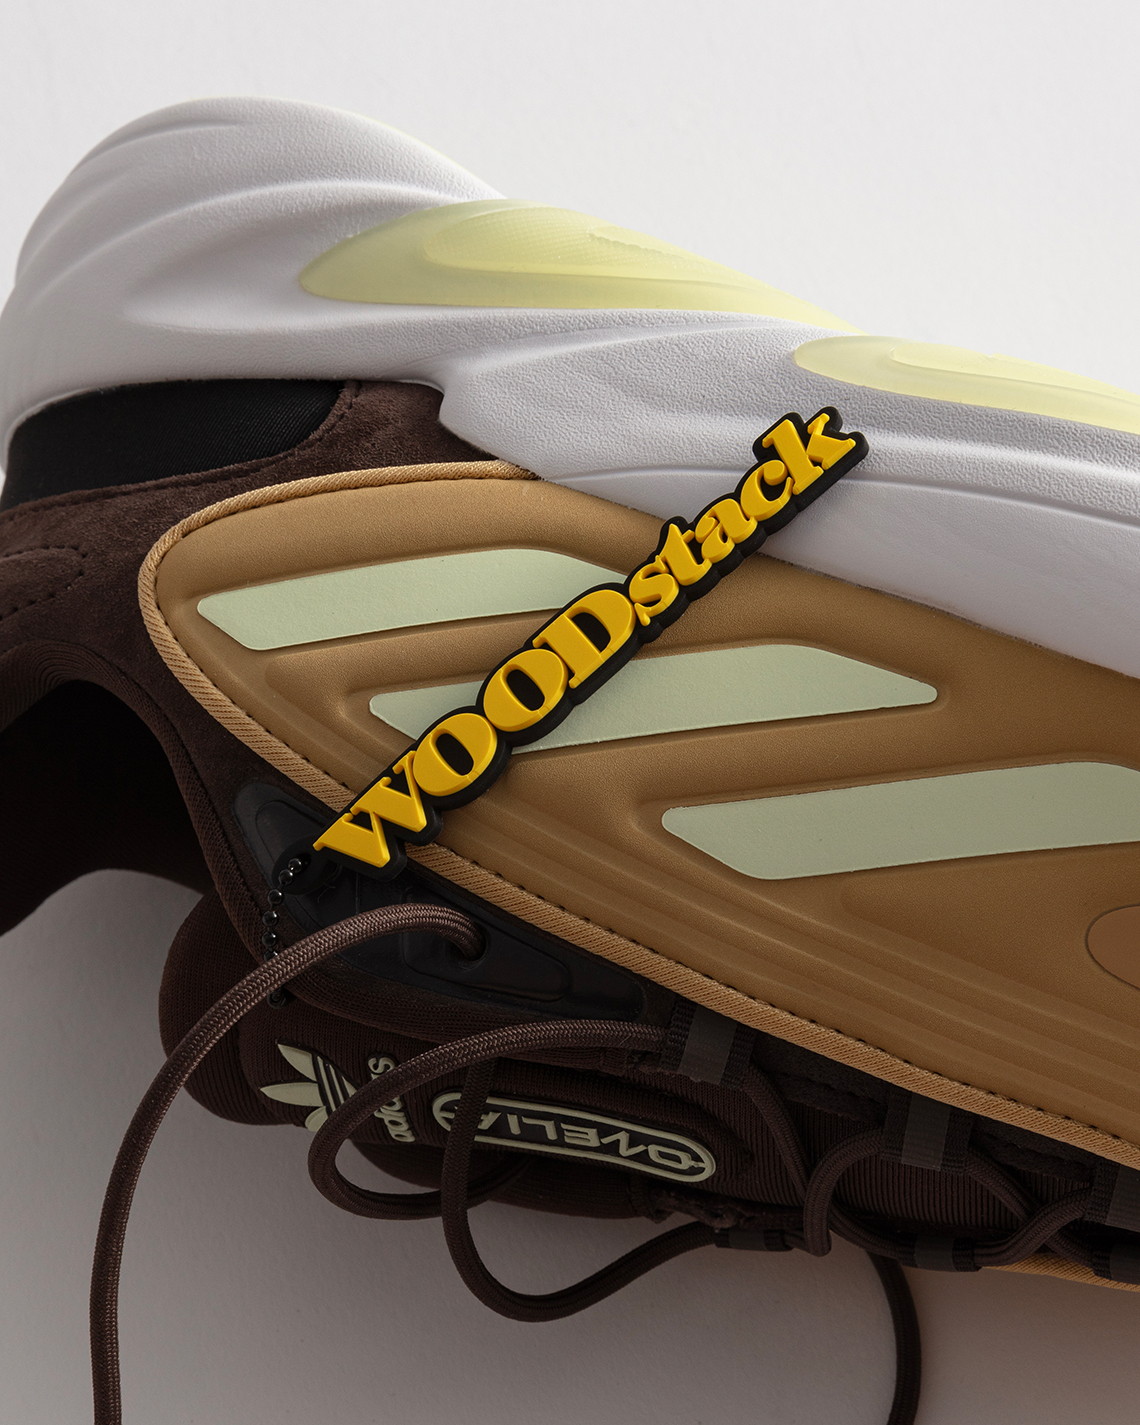 Woodstack Adidas Ozelia Release Date 5